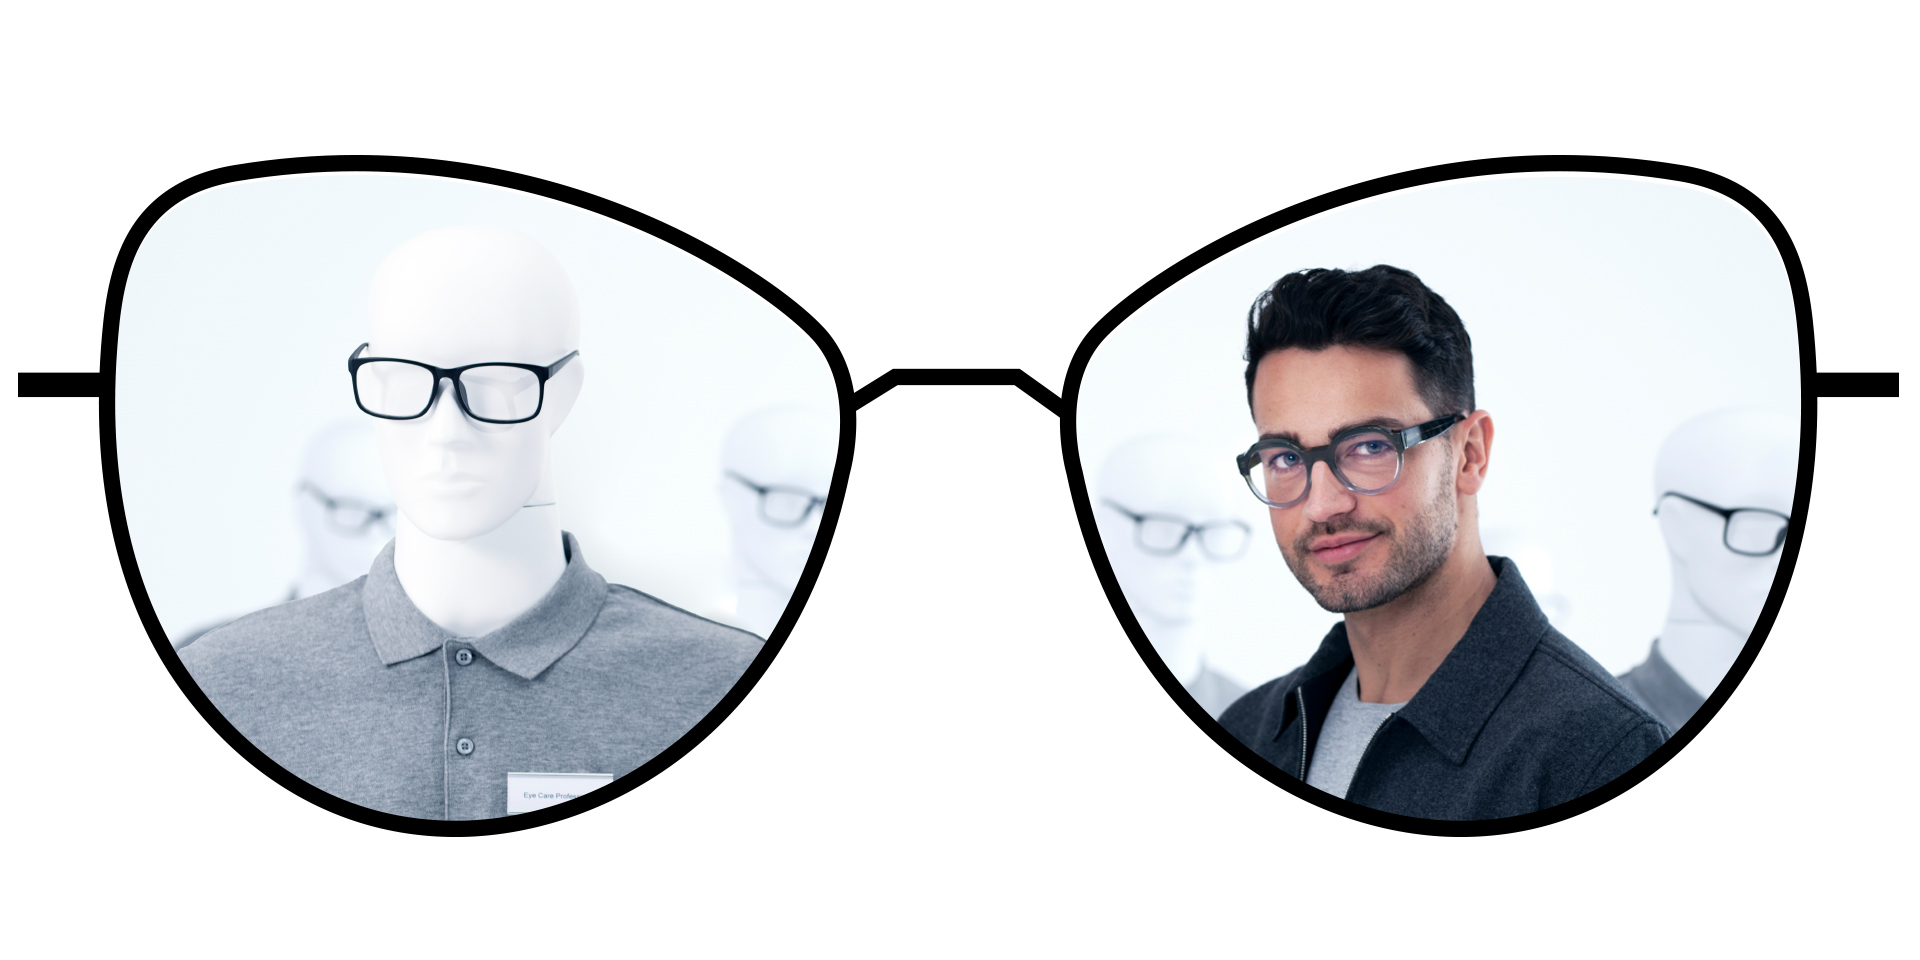 Ilustração de óculos mostrando as zonas embaçadas das lentes de visão simples tradicionais em comparação com as amplas zonas nítidas das lentes de visão simples ZEISS ClearView.